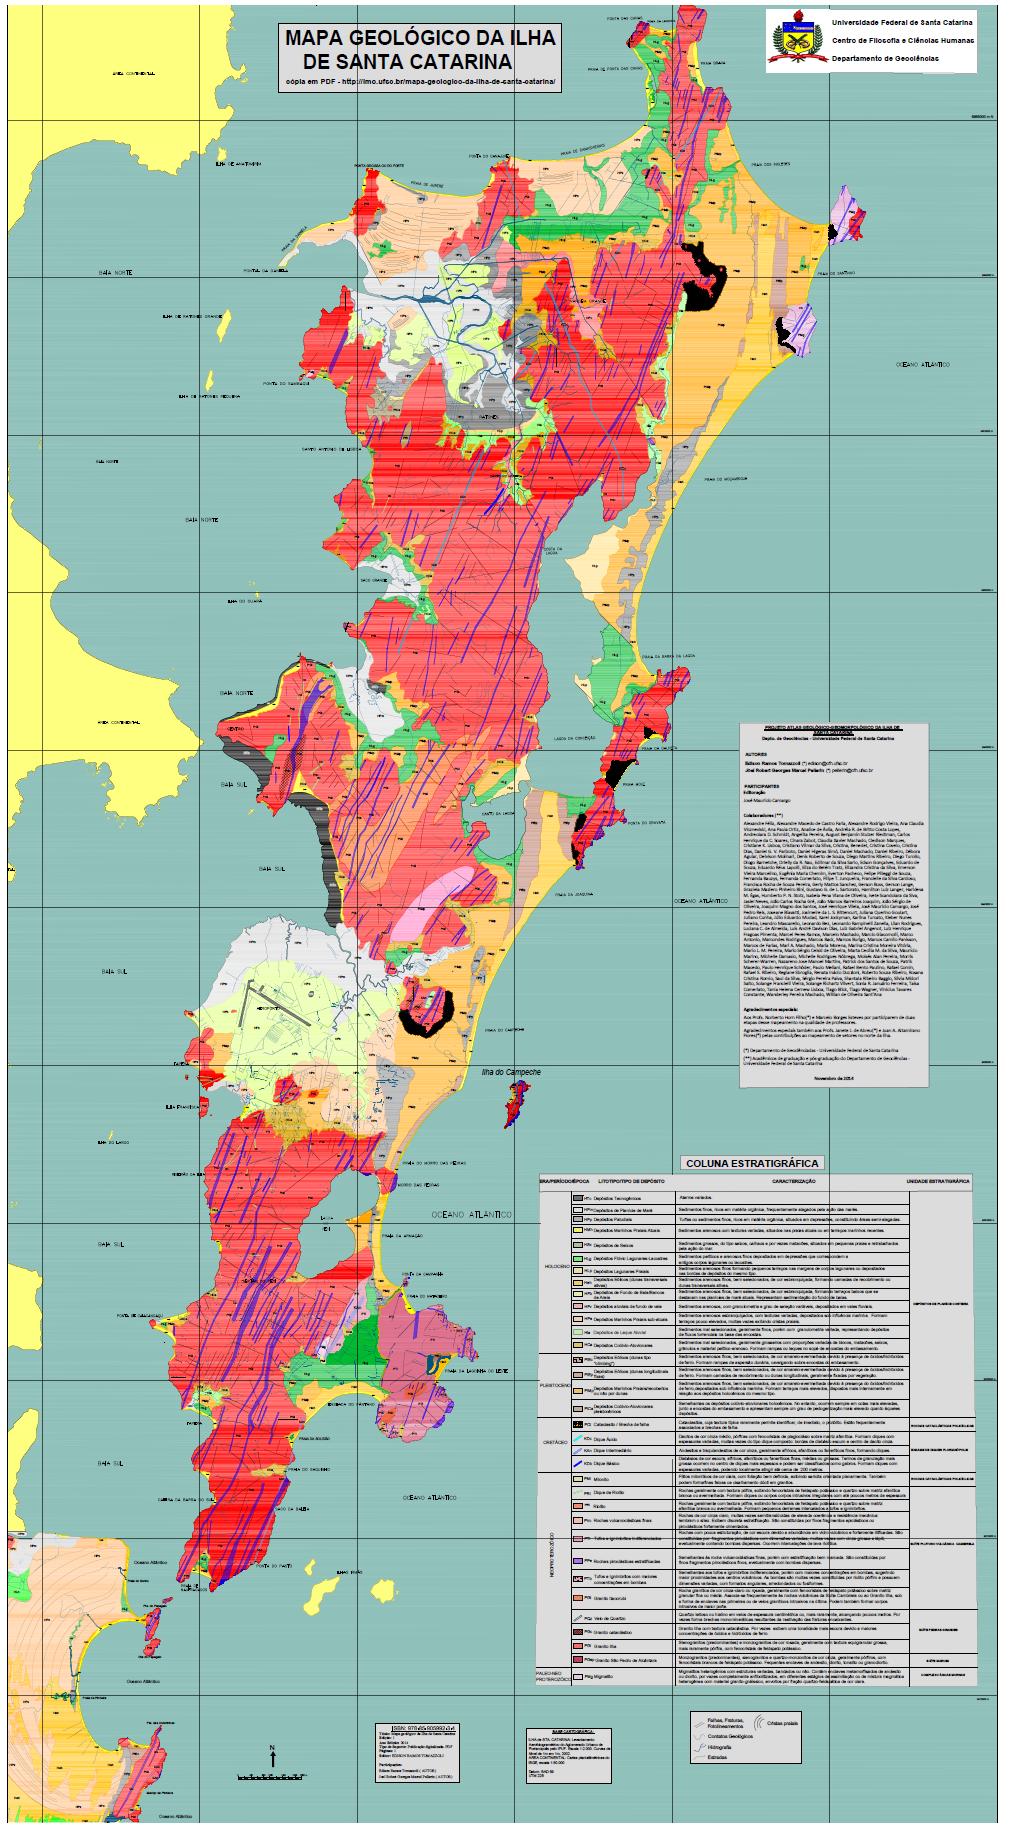 O Enxame de Diques Florianópolis na Ilha de Santa Catarina Composto por: Diabásios/basaltos rochas largamente predominantes Ati alto titânio - tipo Urubici (predominante) e Pitanga Bti baixo titânio